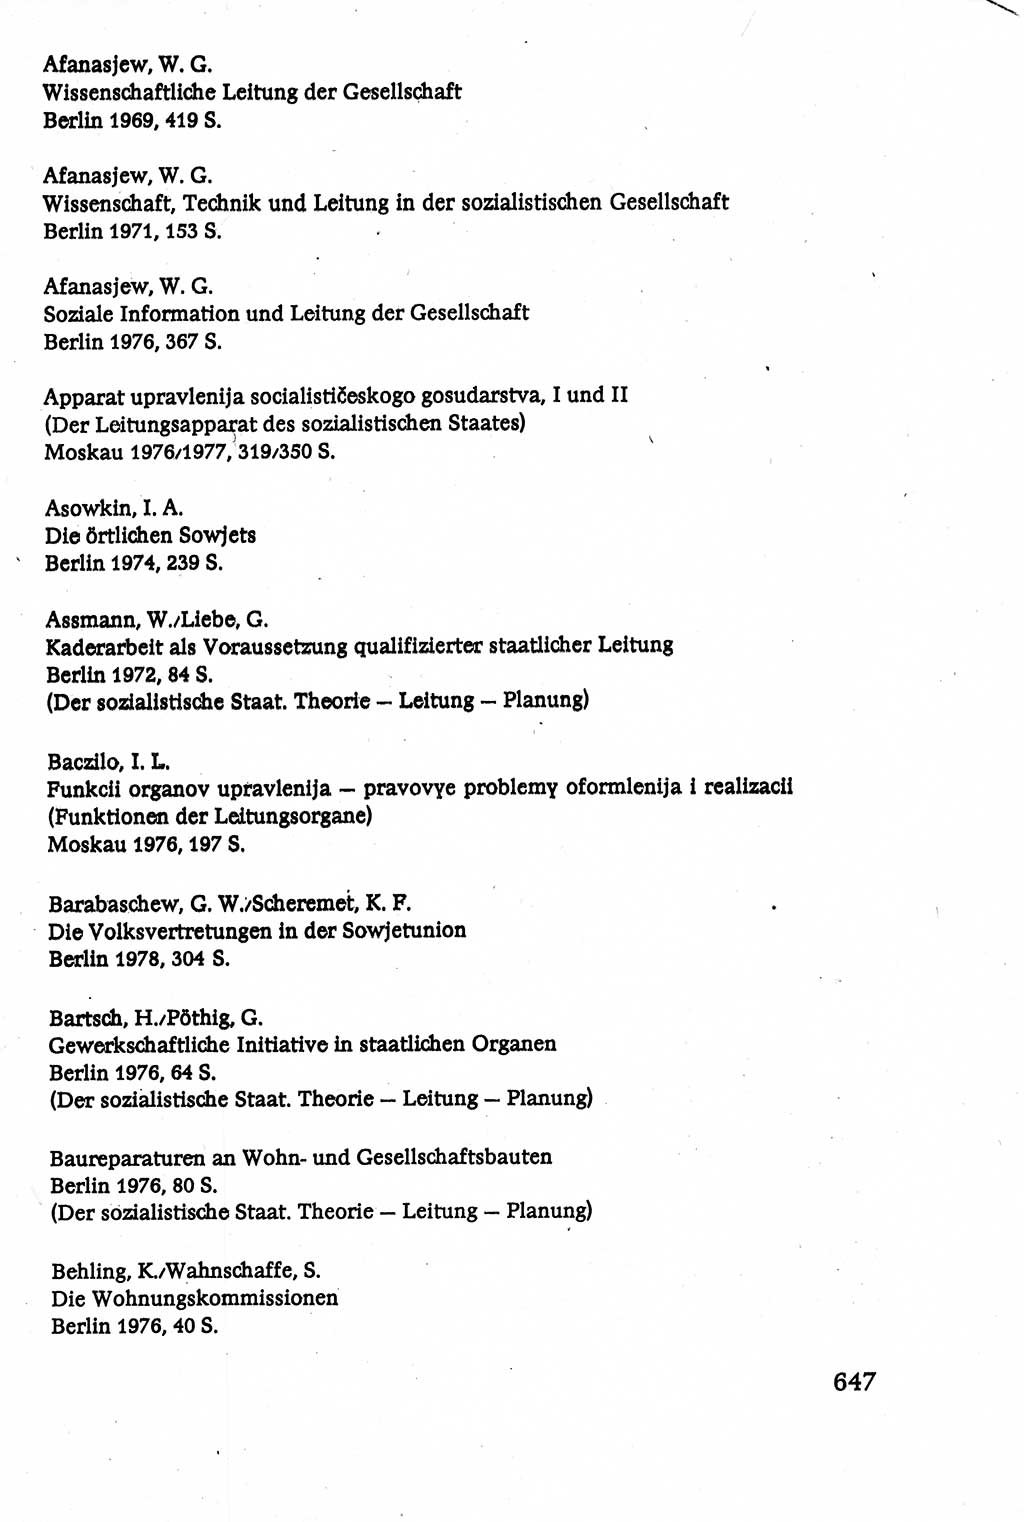 Verwaltungsrecht [Deutsche Demokratische Republik (DDR)], Lehrbuch 1979, Seite 647 (Verw.-R. DDR Lb. 1979, S. 647)